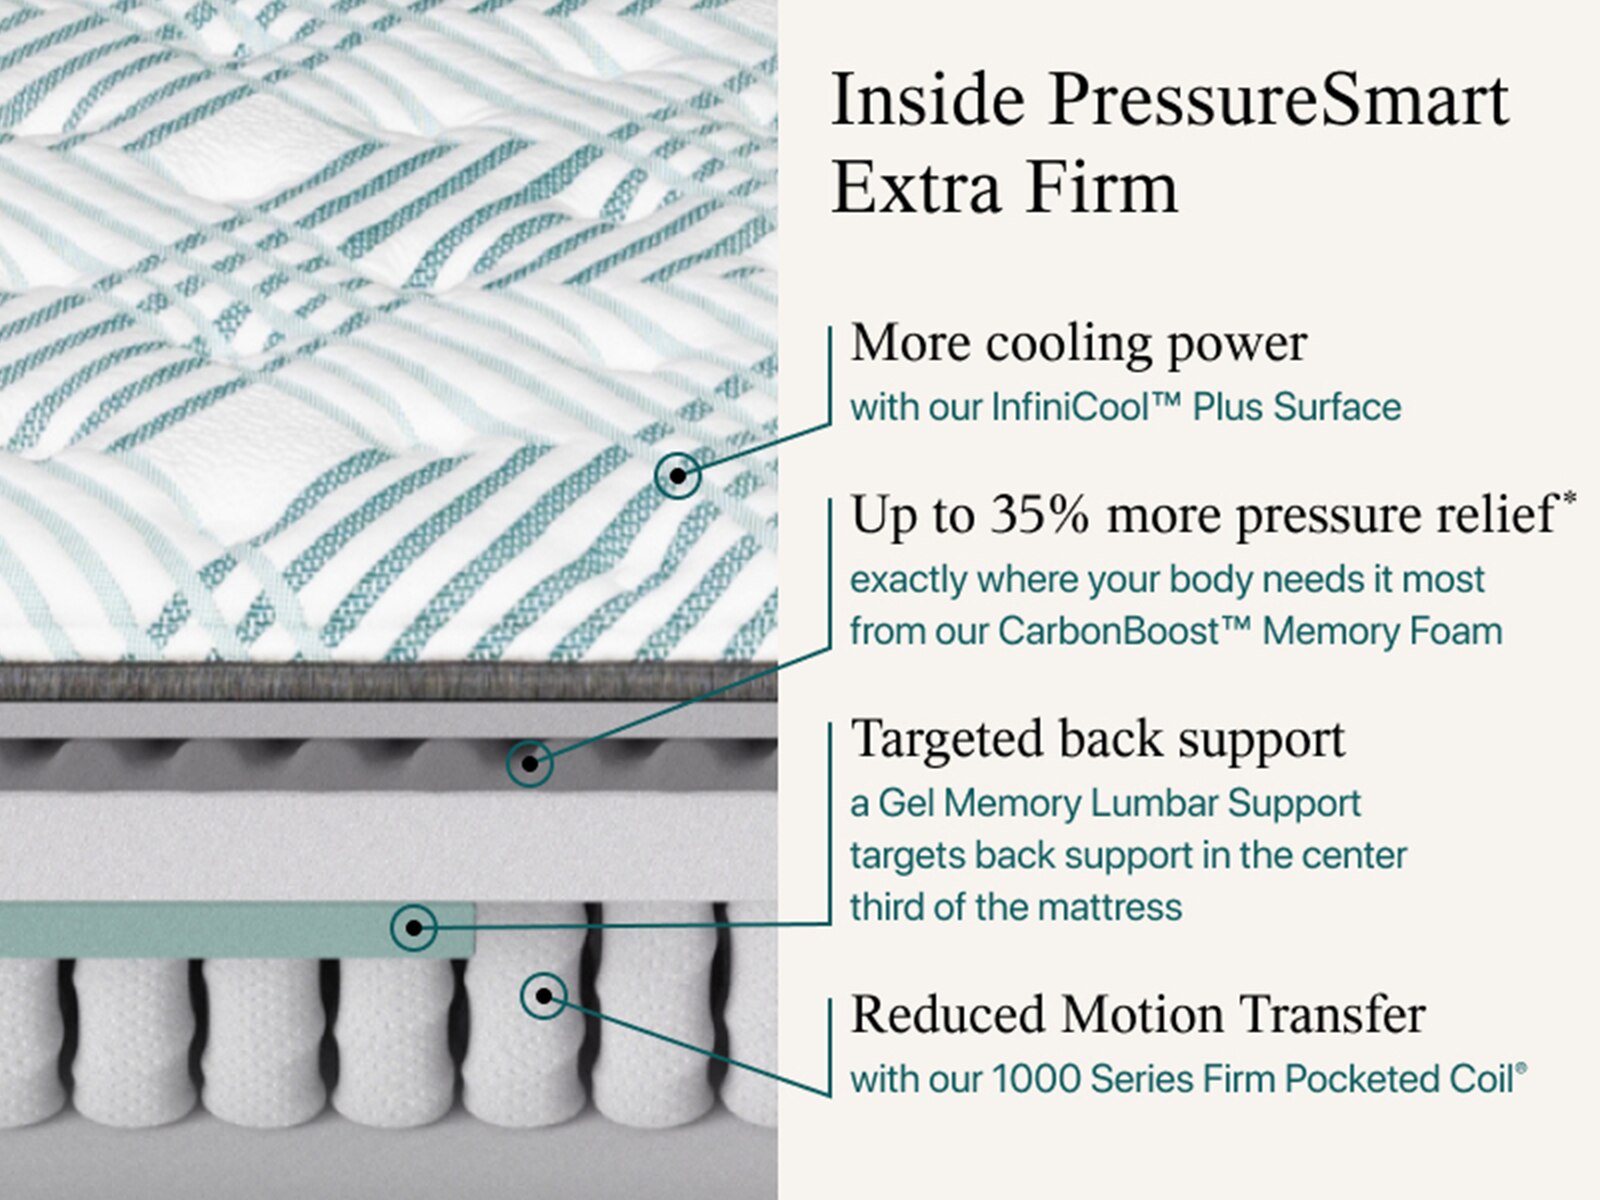 pressuresmart 2.0 firm 11 inch mattress